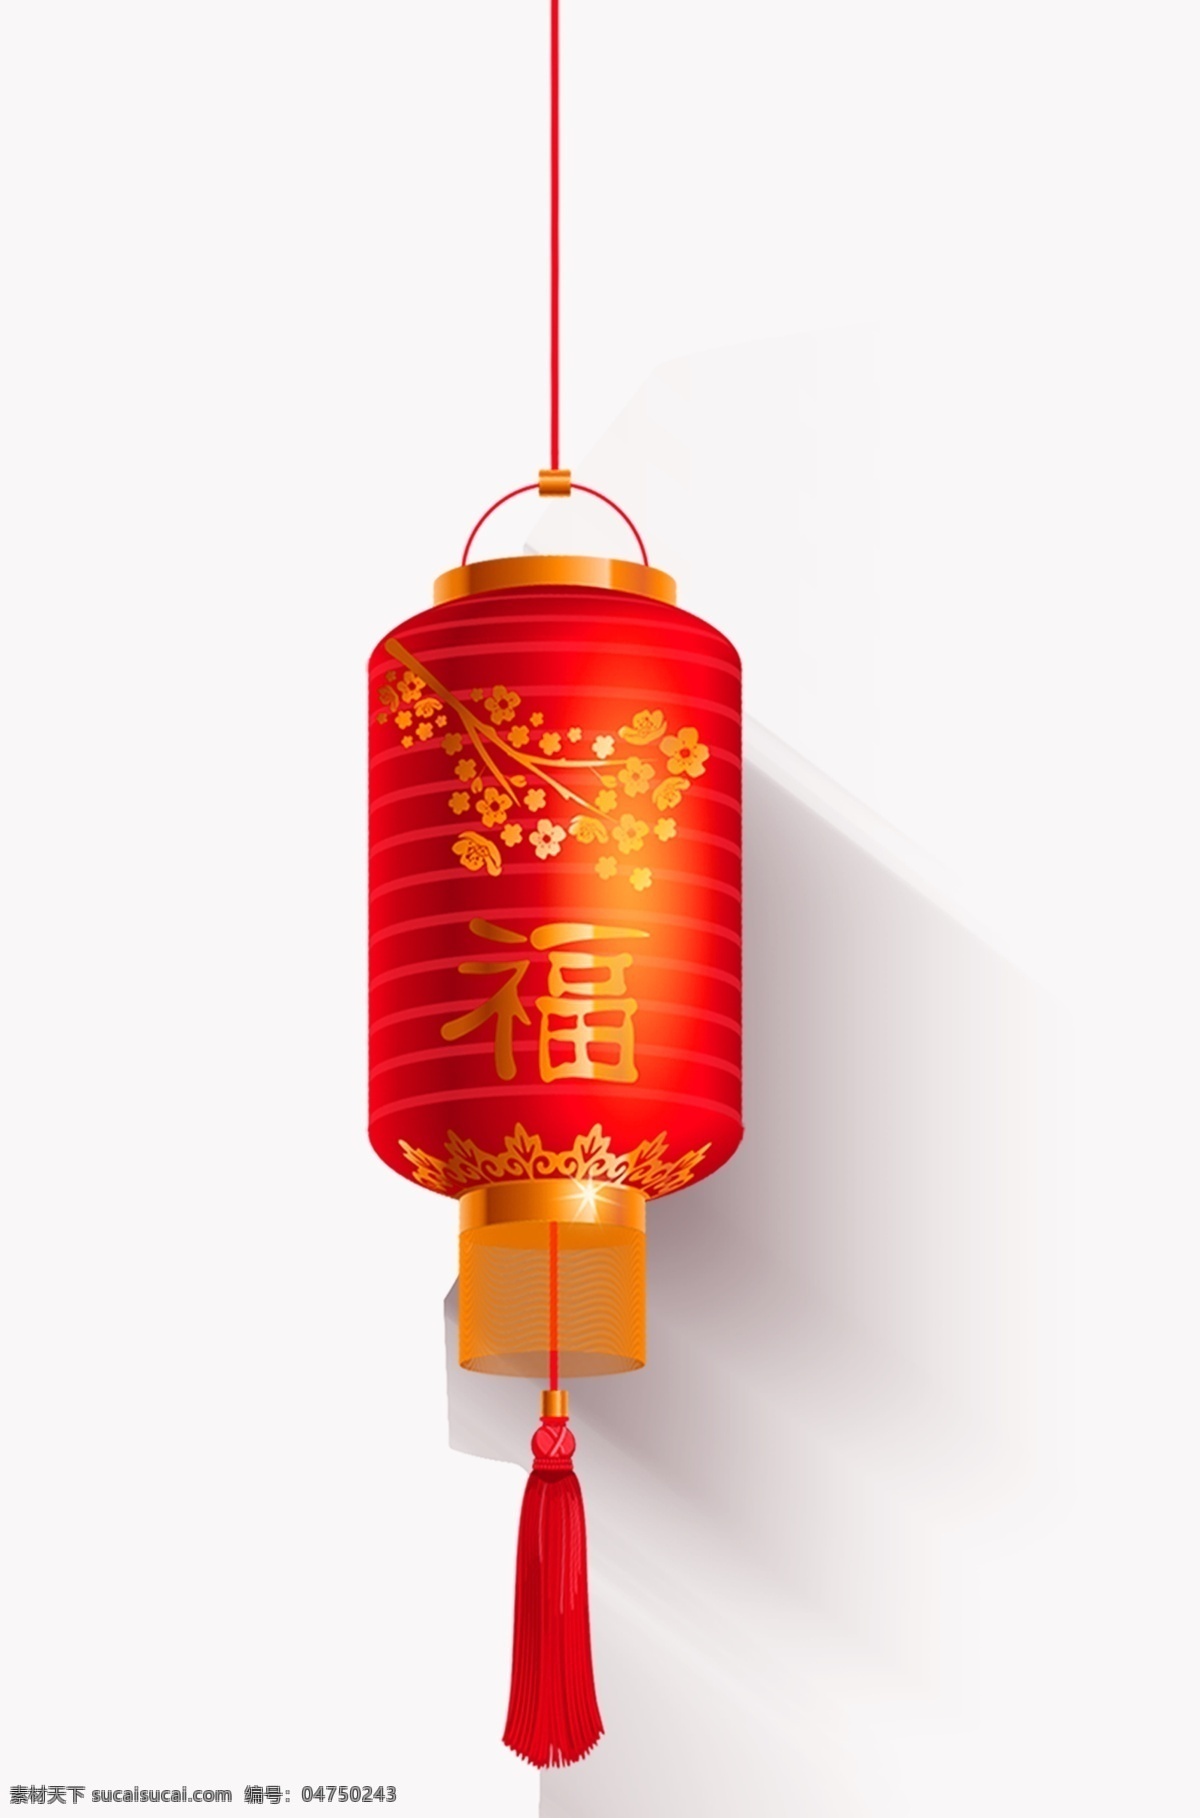 春节 中秋节 节日 节日灯笼 红灯笼 发光灯笼 标识 文化艺术 节日庆祝